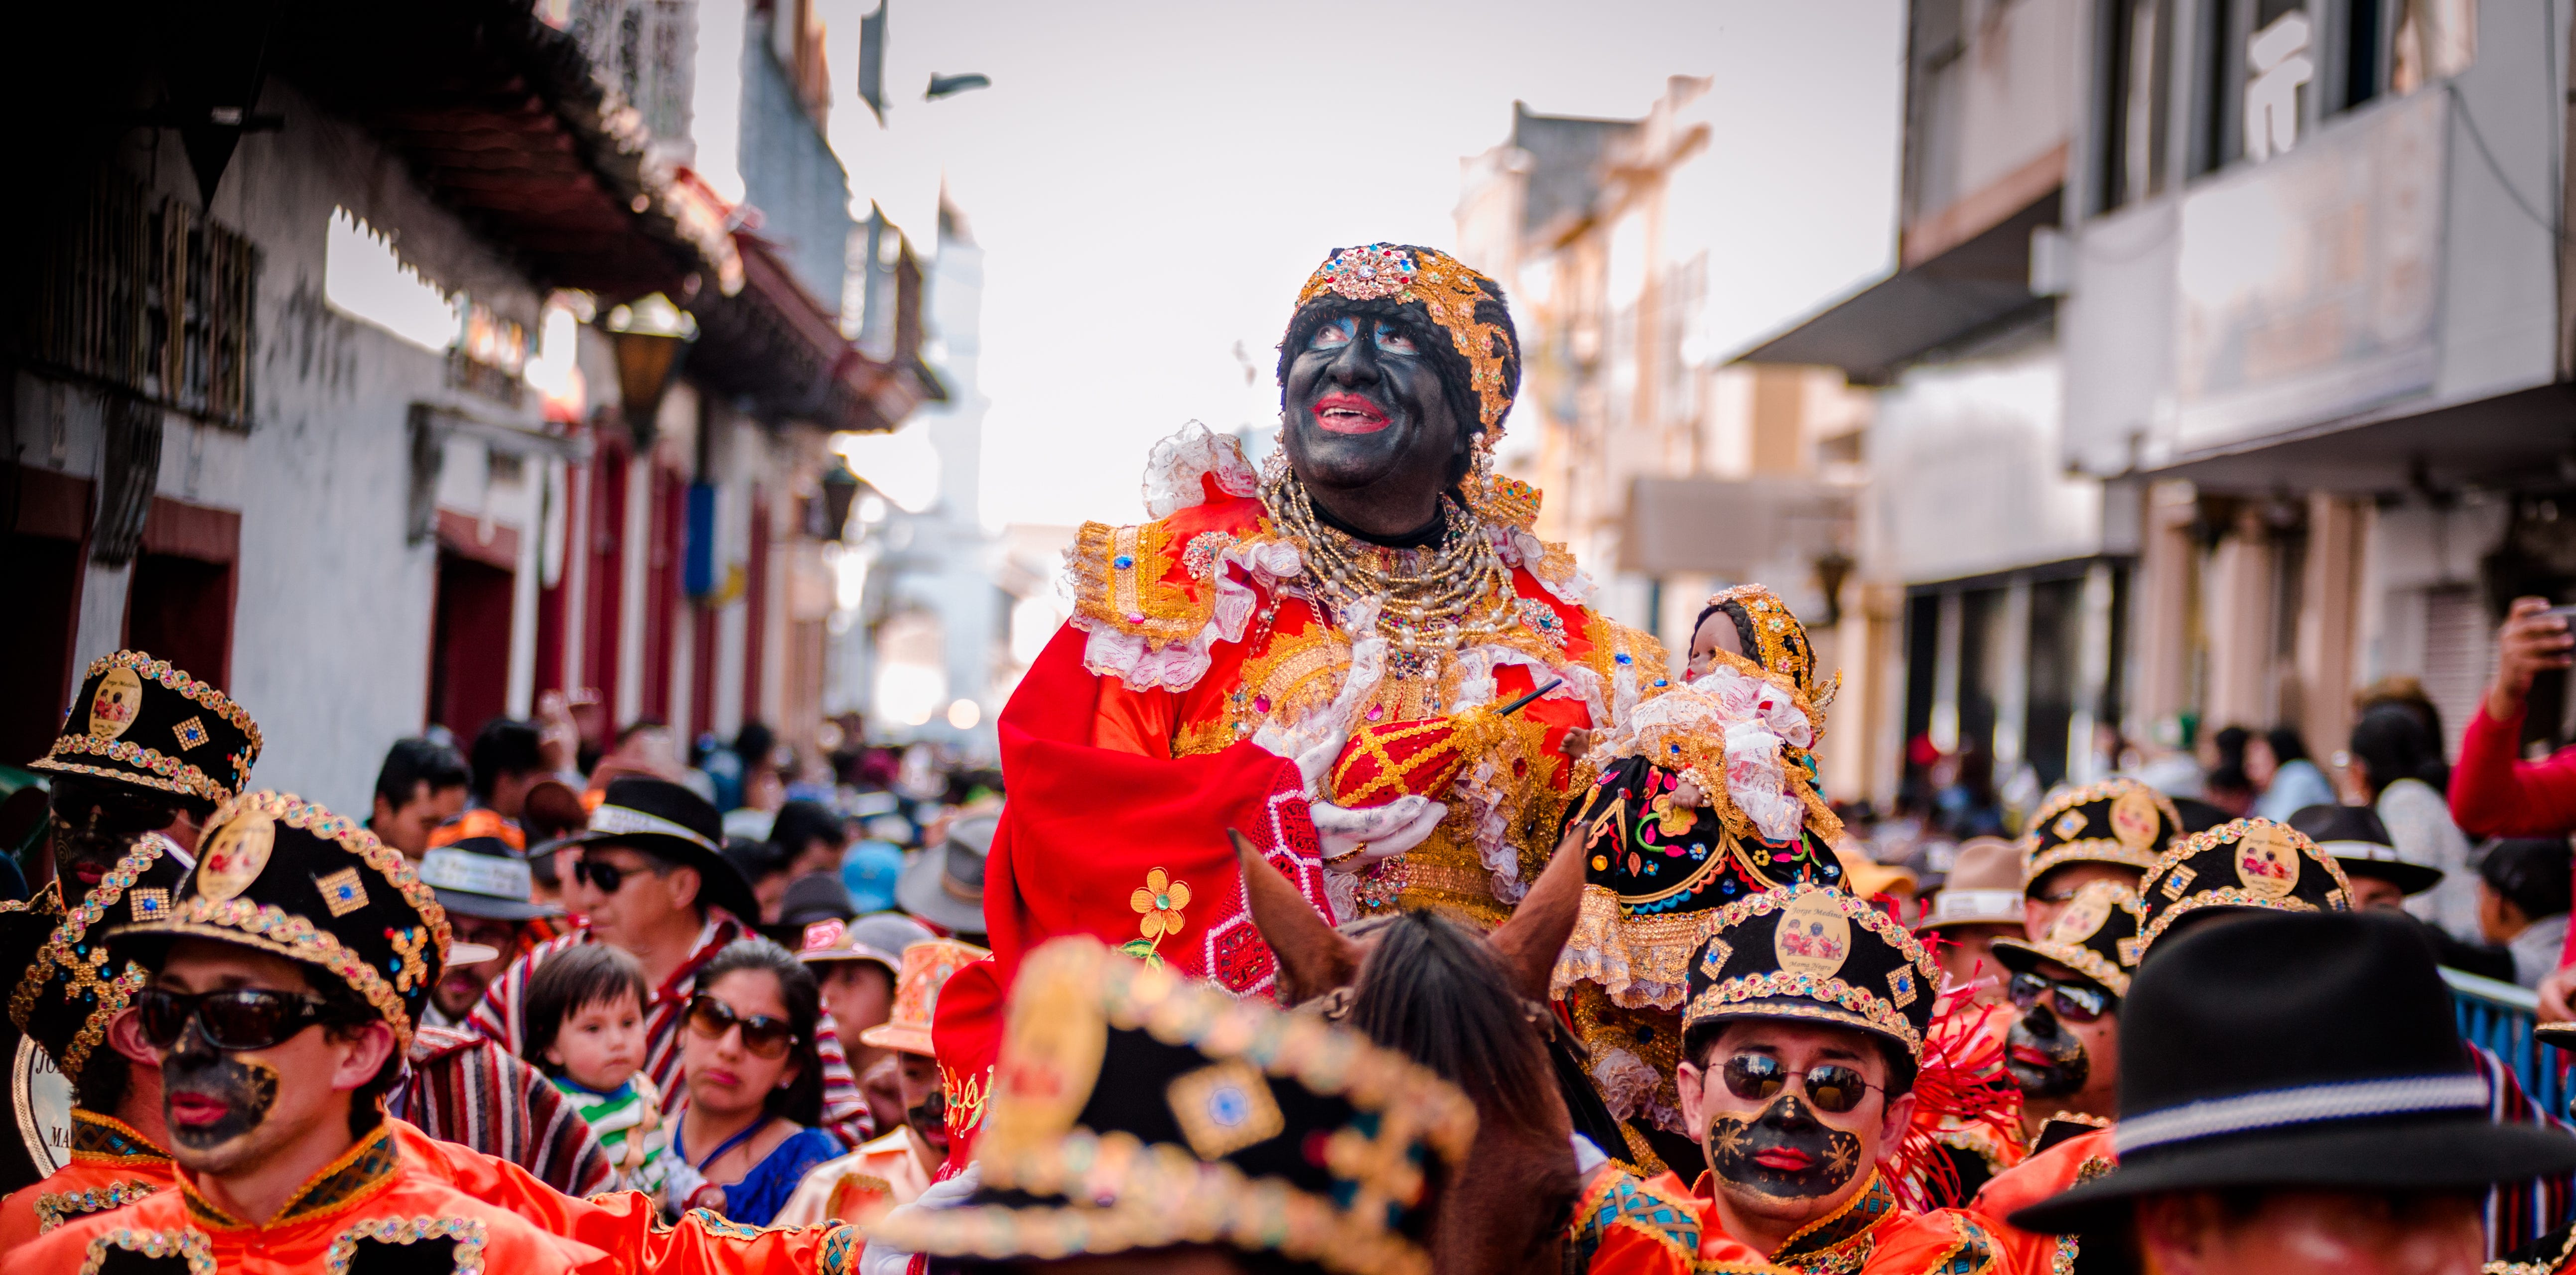 Fiestas Y Rituales En Ecuador Un Pais De Cultura Ecuador Travel